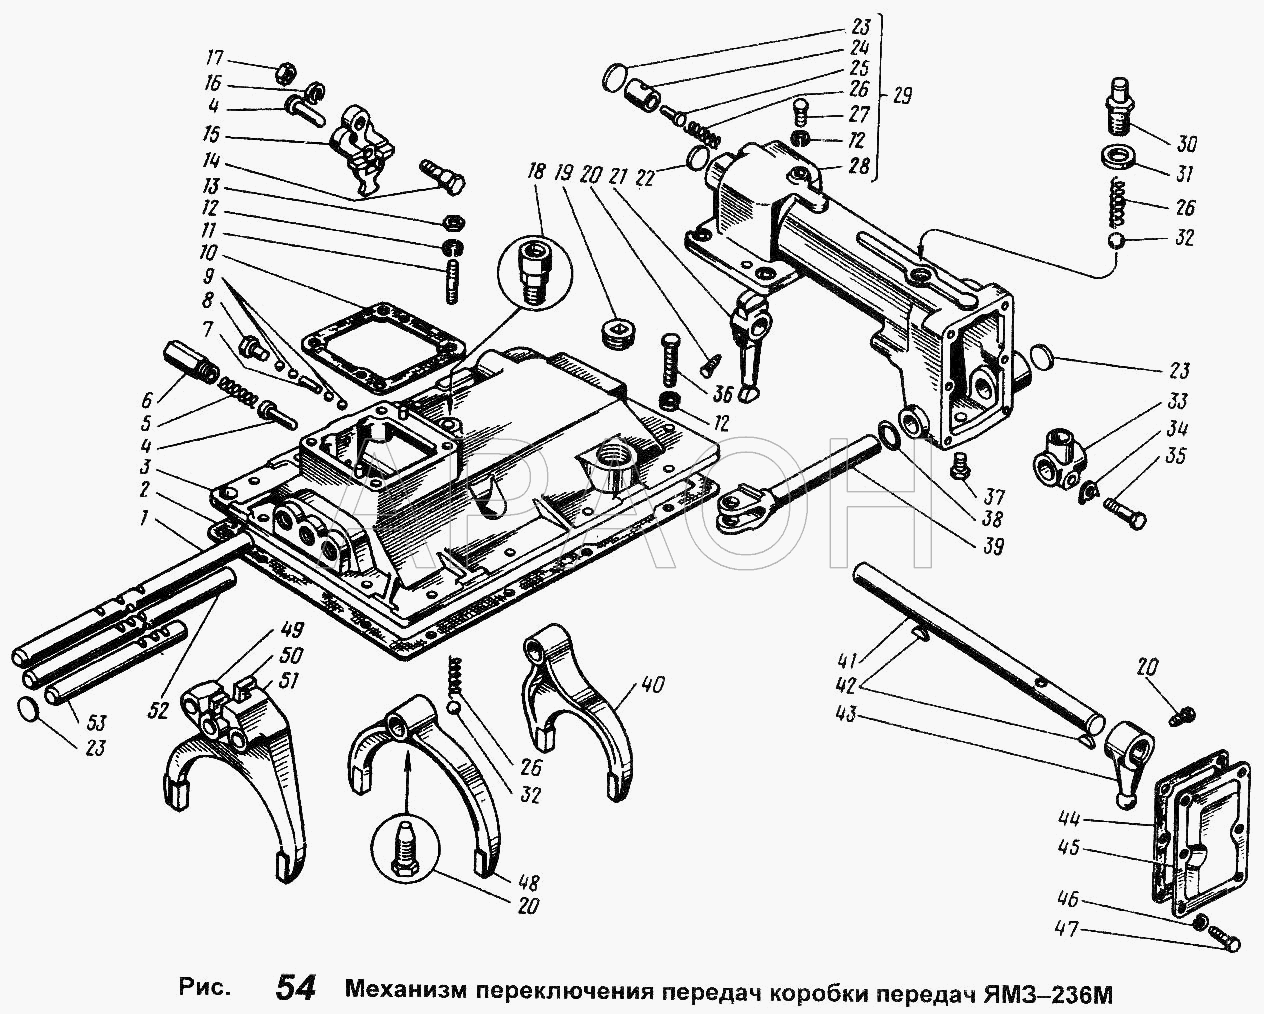 Механизм переключения передач коробки передач ЯМЗ-236М ЯМЗ-236 М